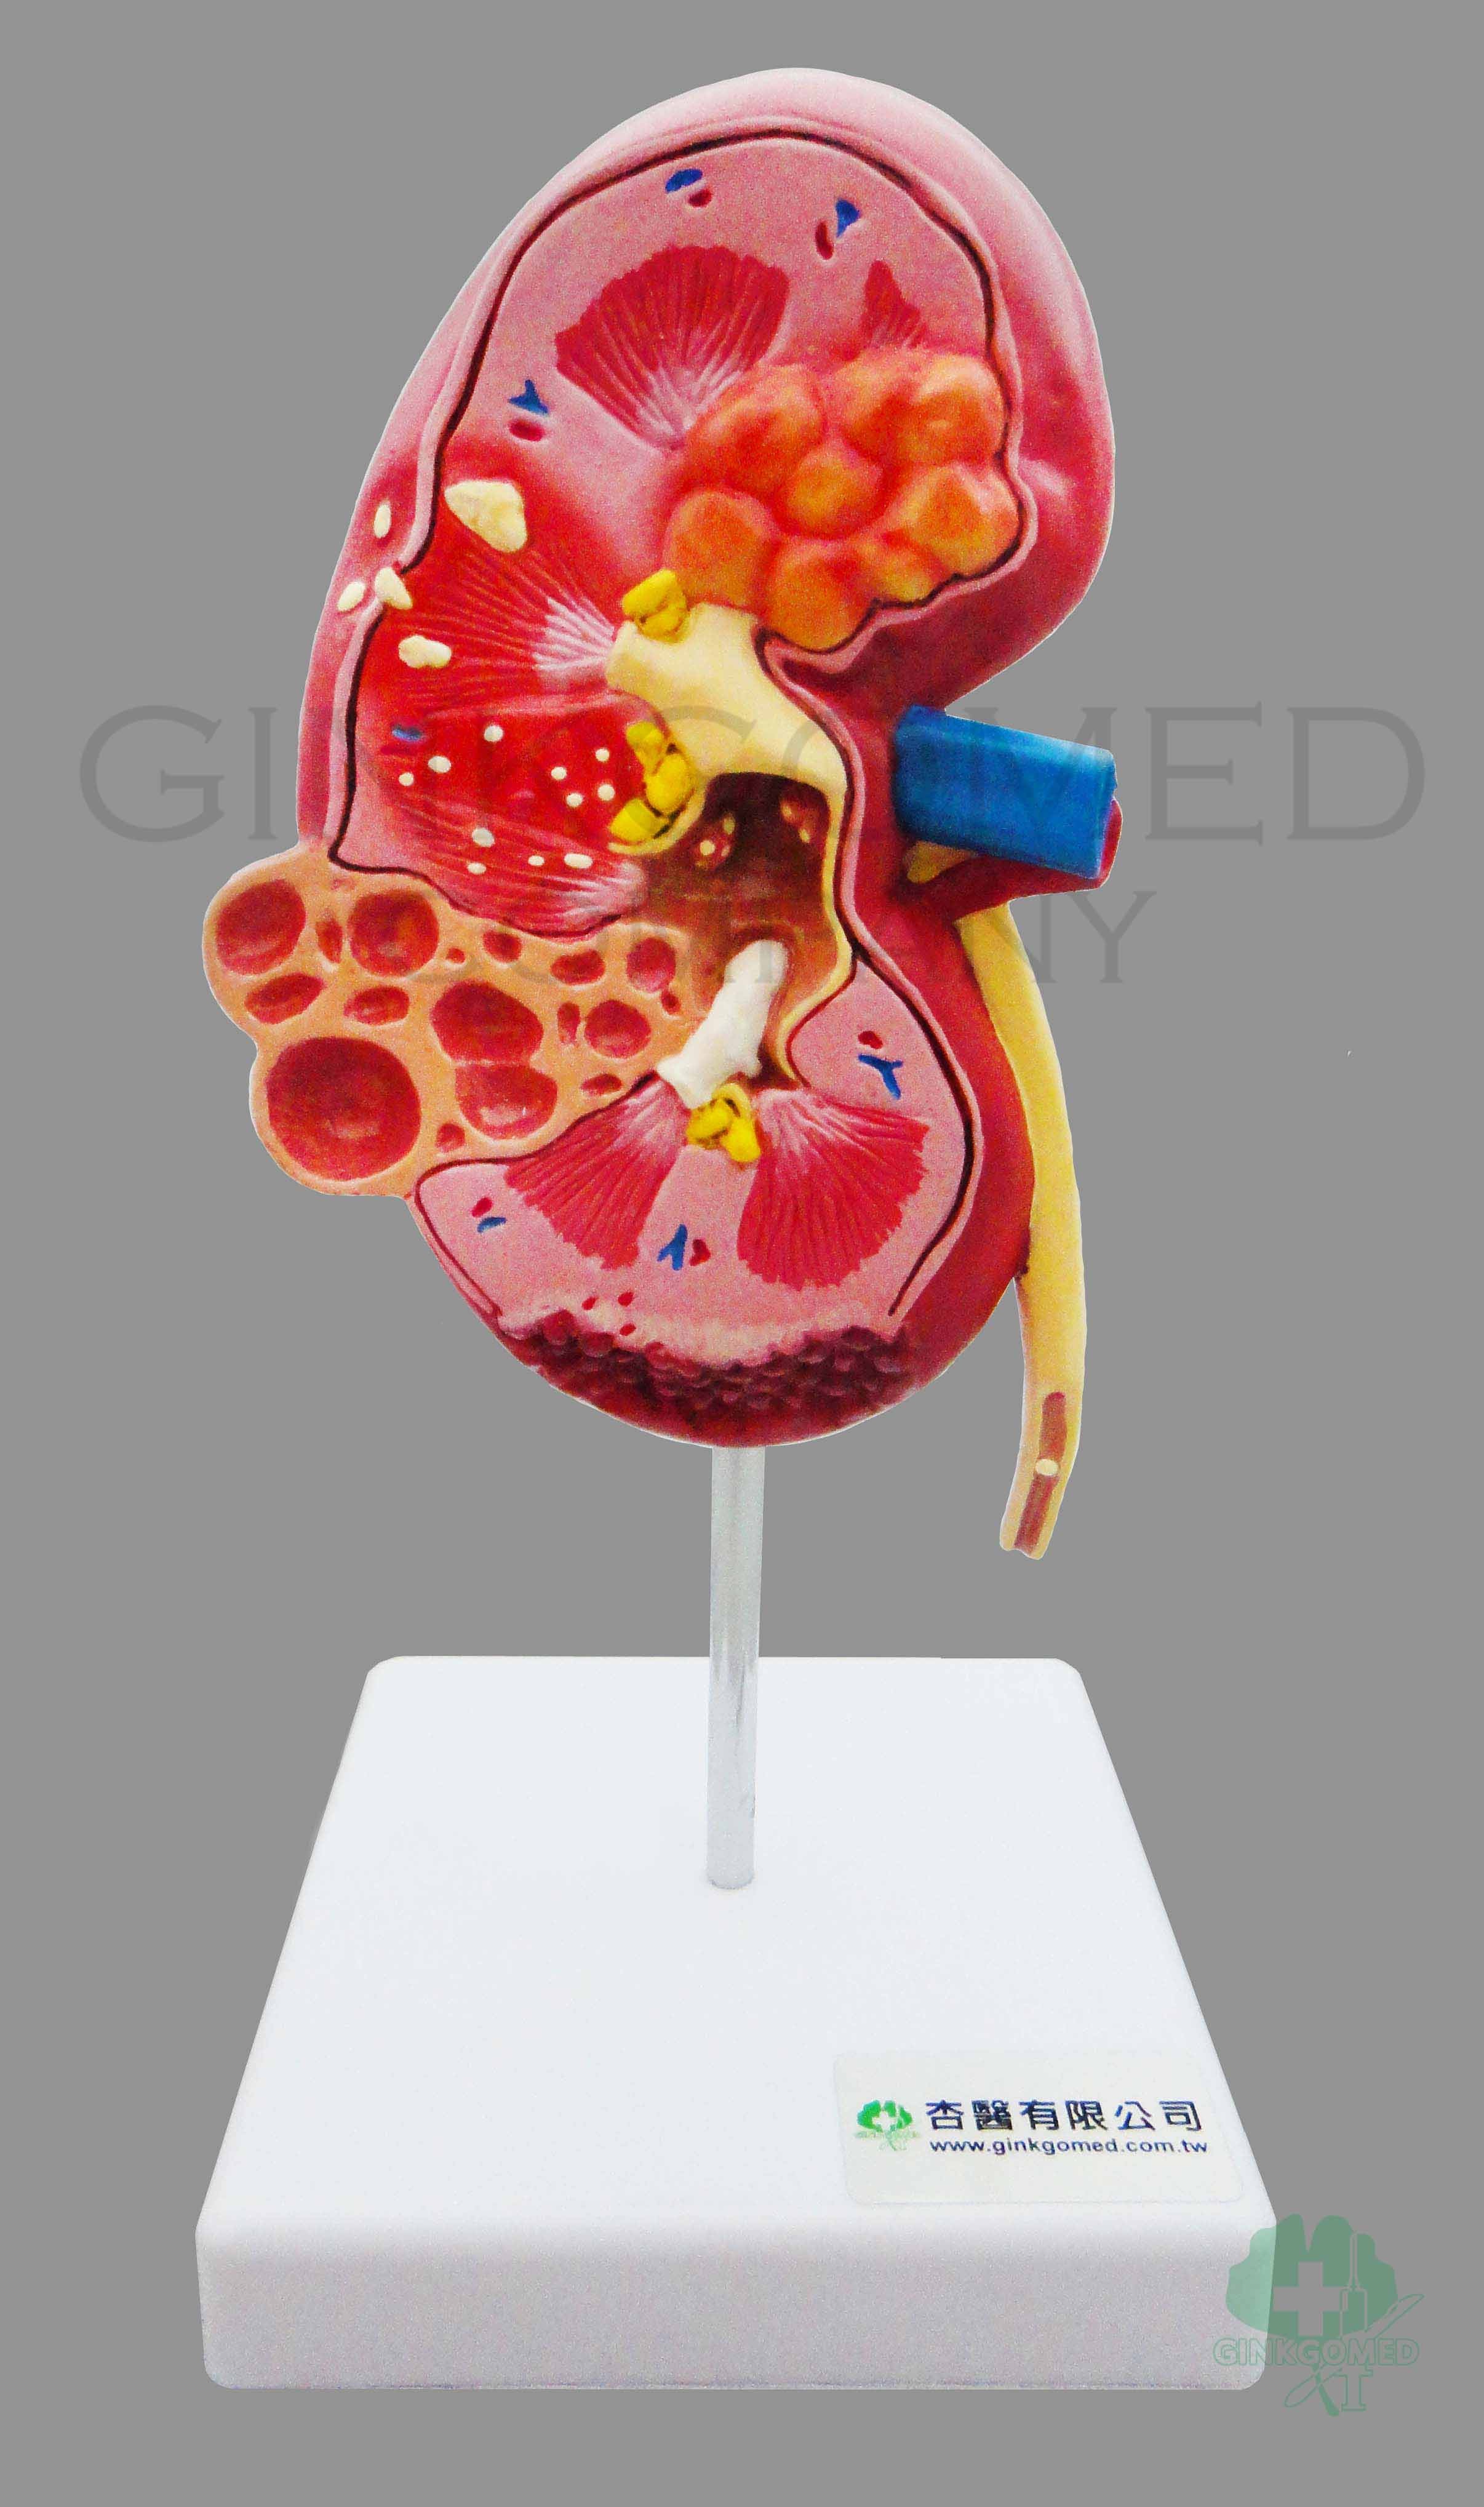 GM-100011  Diseased Kidney